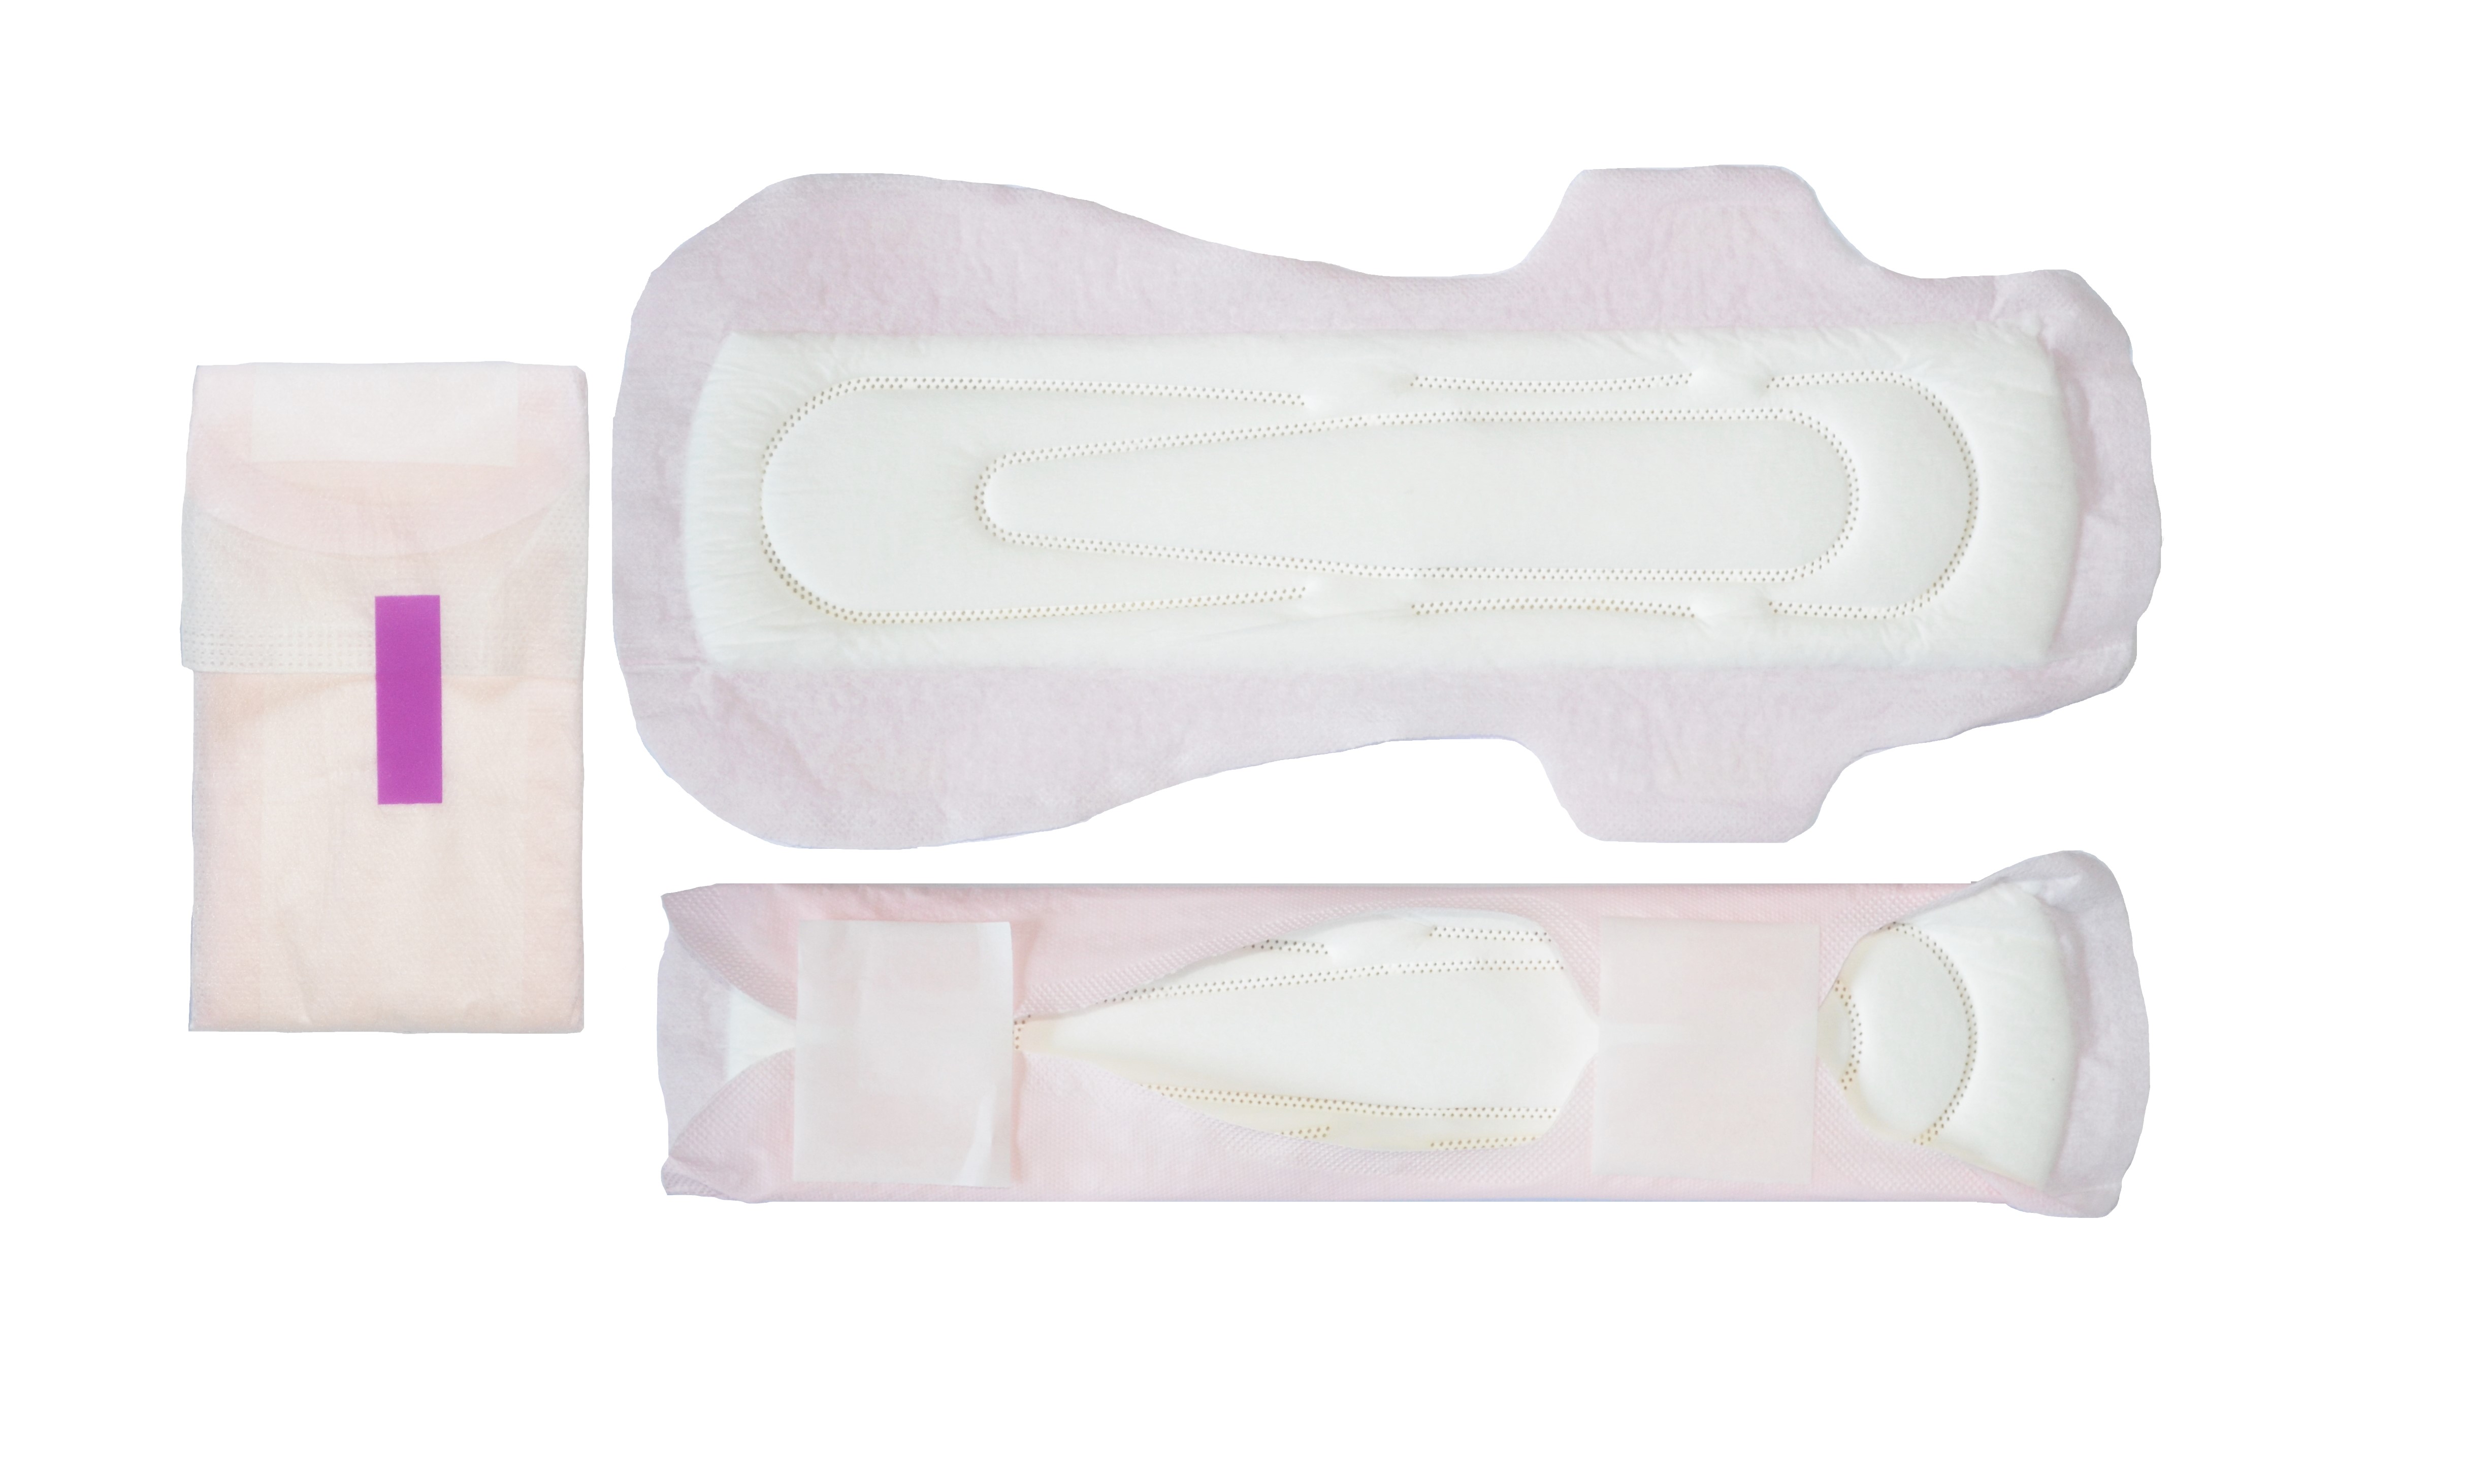 Maxi 垫的另一种用途是解决小孩子的尿液控制问题